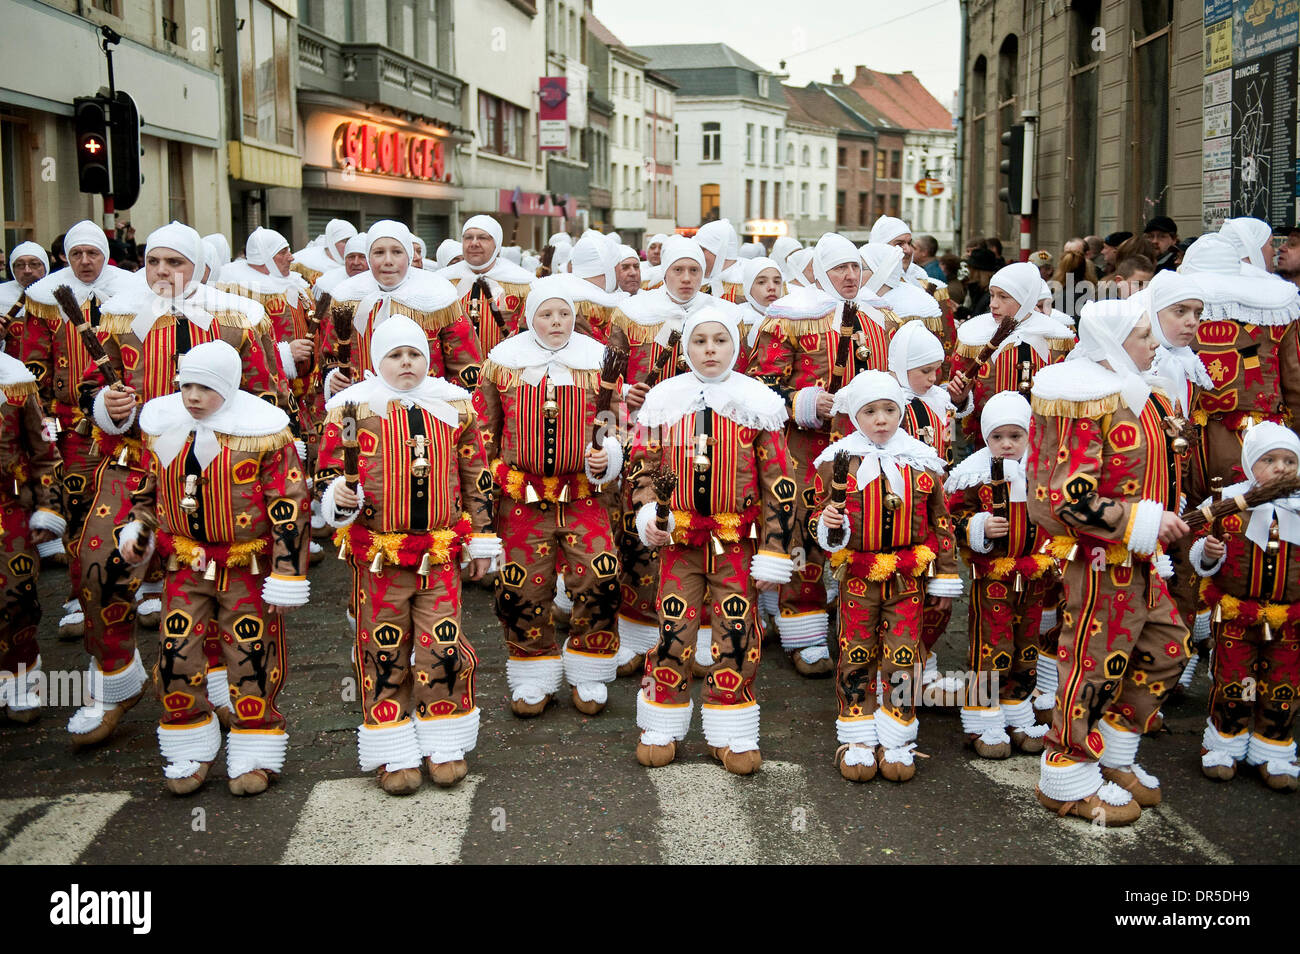 24. Februar 2009 - Binche, Hennegau, Belgien - Gilles de Binche tragen Sie  ihren traditionellen Kostümen und Masken während ihren Karneval in den  Straßen auf Fasching (Fastnacht Parade). Die Karneval von Binche-Tradition,